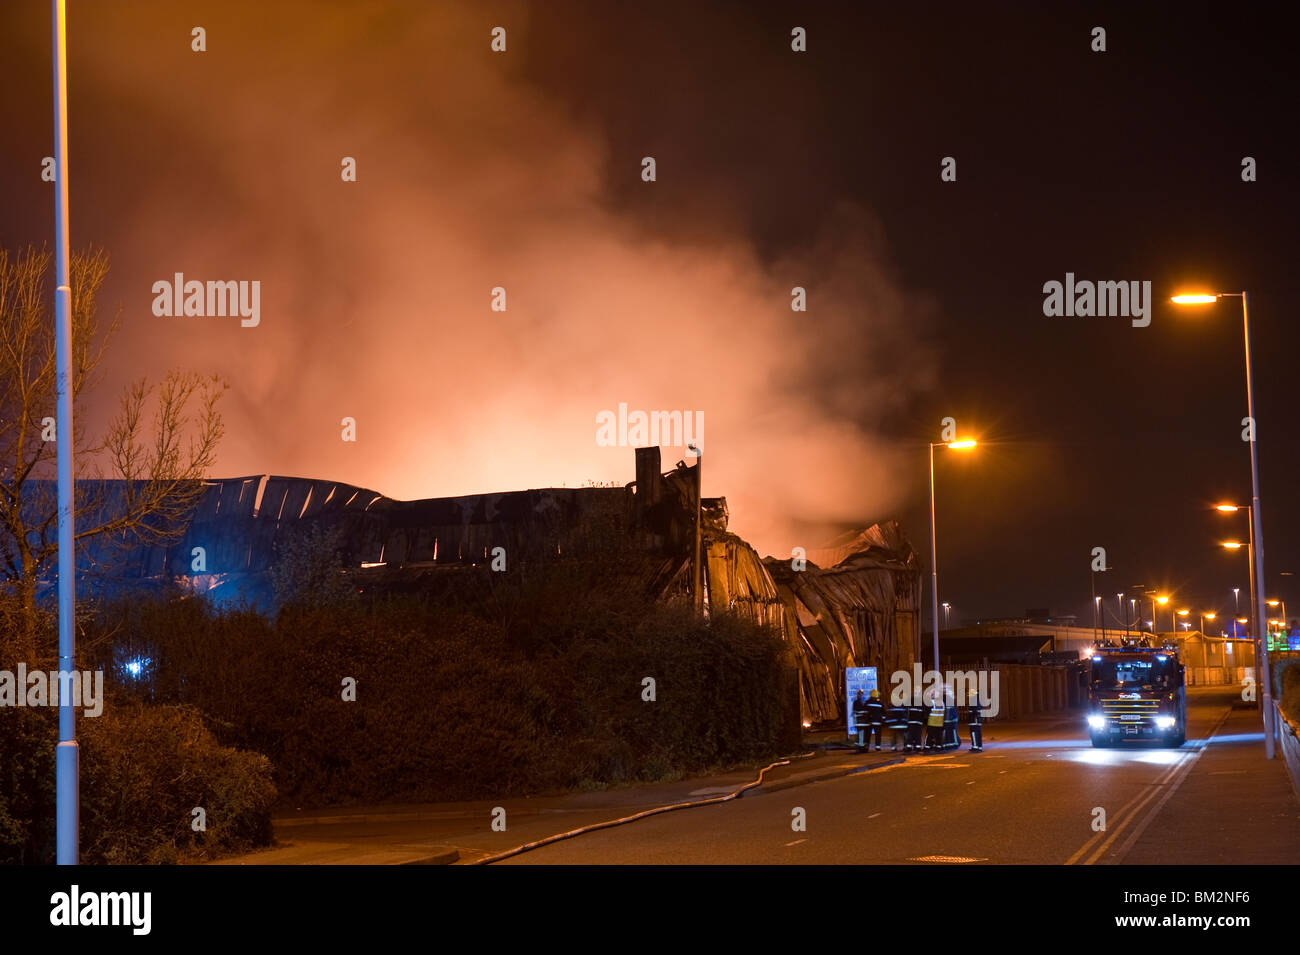 Große Fabrik Lager in Brand in der Nacht mit vielen Flammen und Rauch Stockfoto